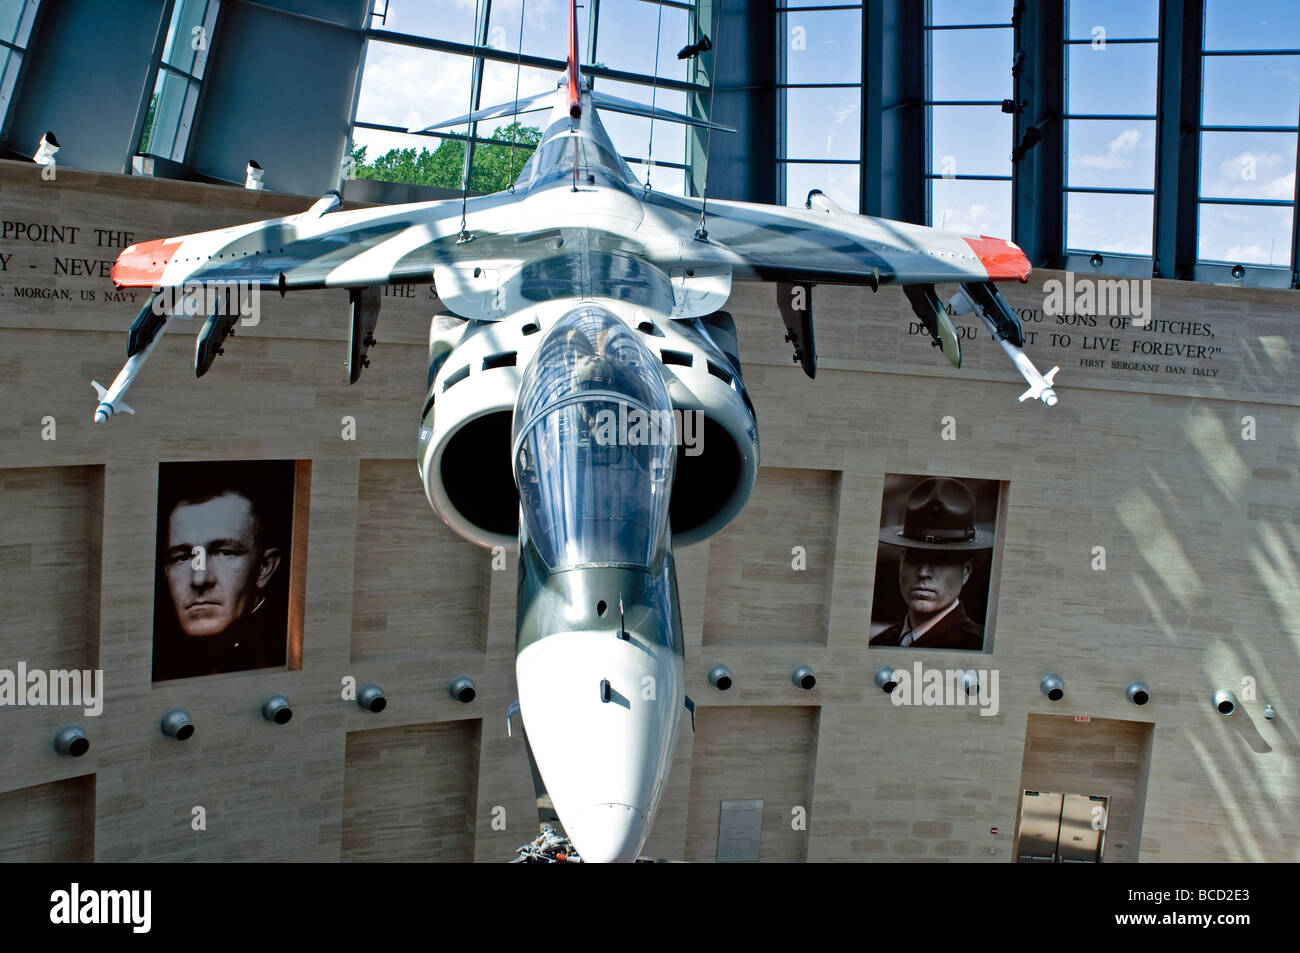 Museo de la Infantería de Marina de los Estados Unidos en Quantico, Virginia tiene una excelente colección de antiguos aviones de combate y aviones en pantalla. Foto de stock